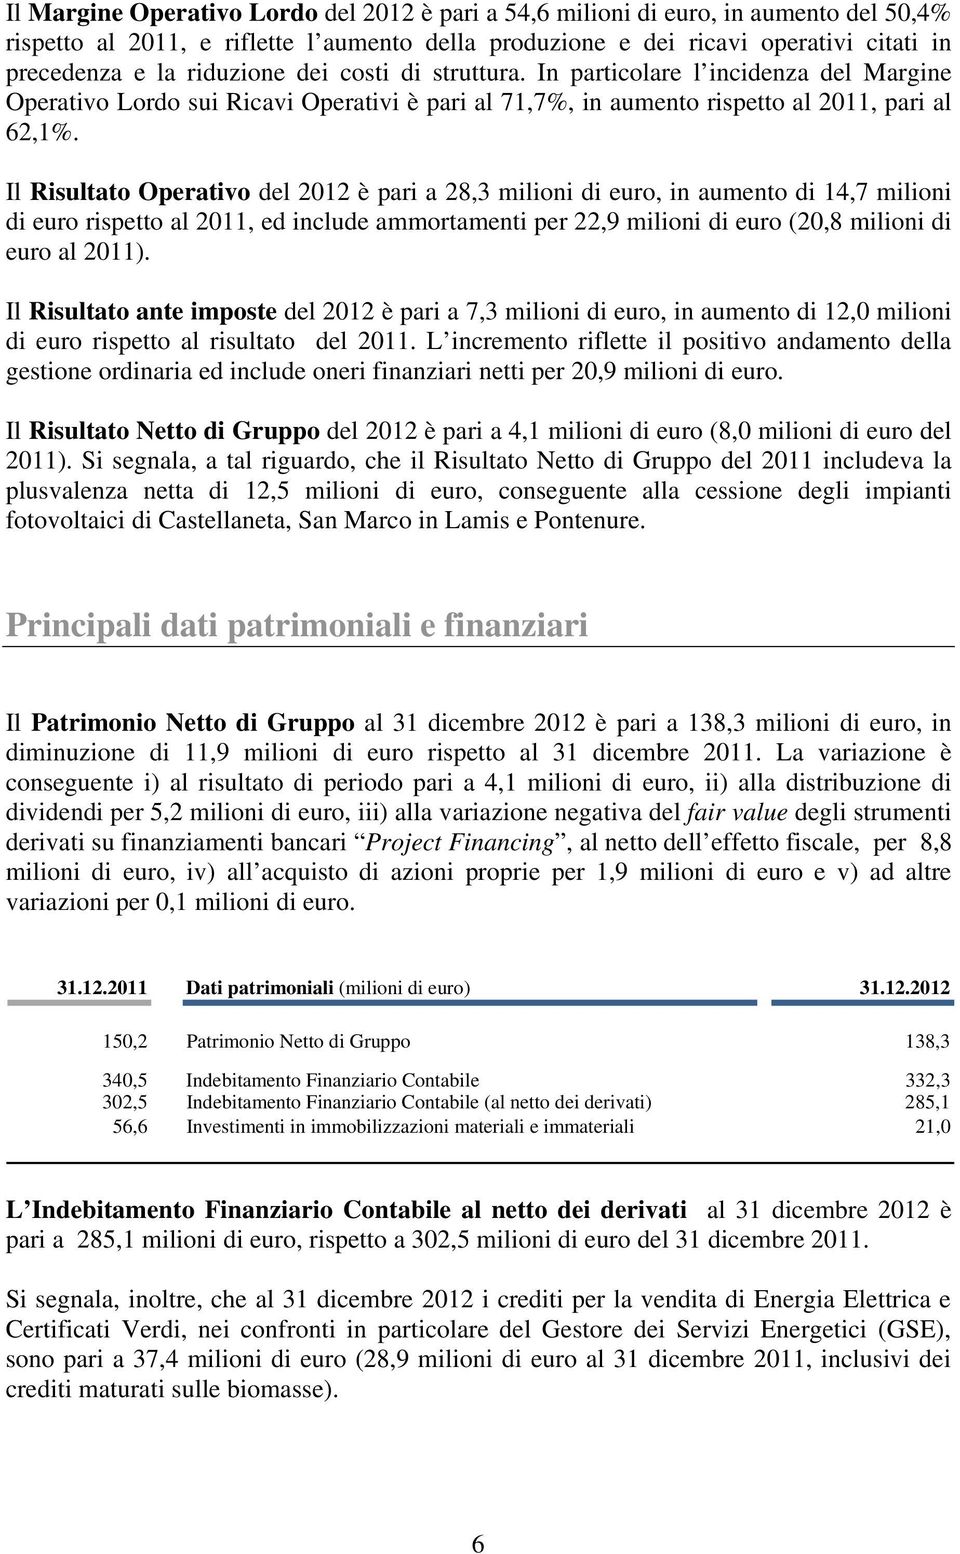 Il Risultato Operativo del 2012 è pari a 28,3 milioni di euro, in aumento di 14,7 milioni di euro rispetto al 2011, ed include ammortamenti per 22,9 milioni di euro (20,8 milioni di euro al 2011).